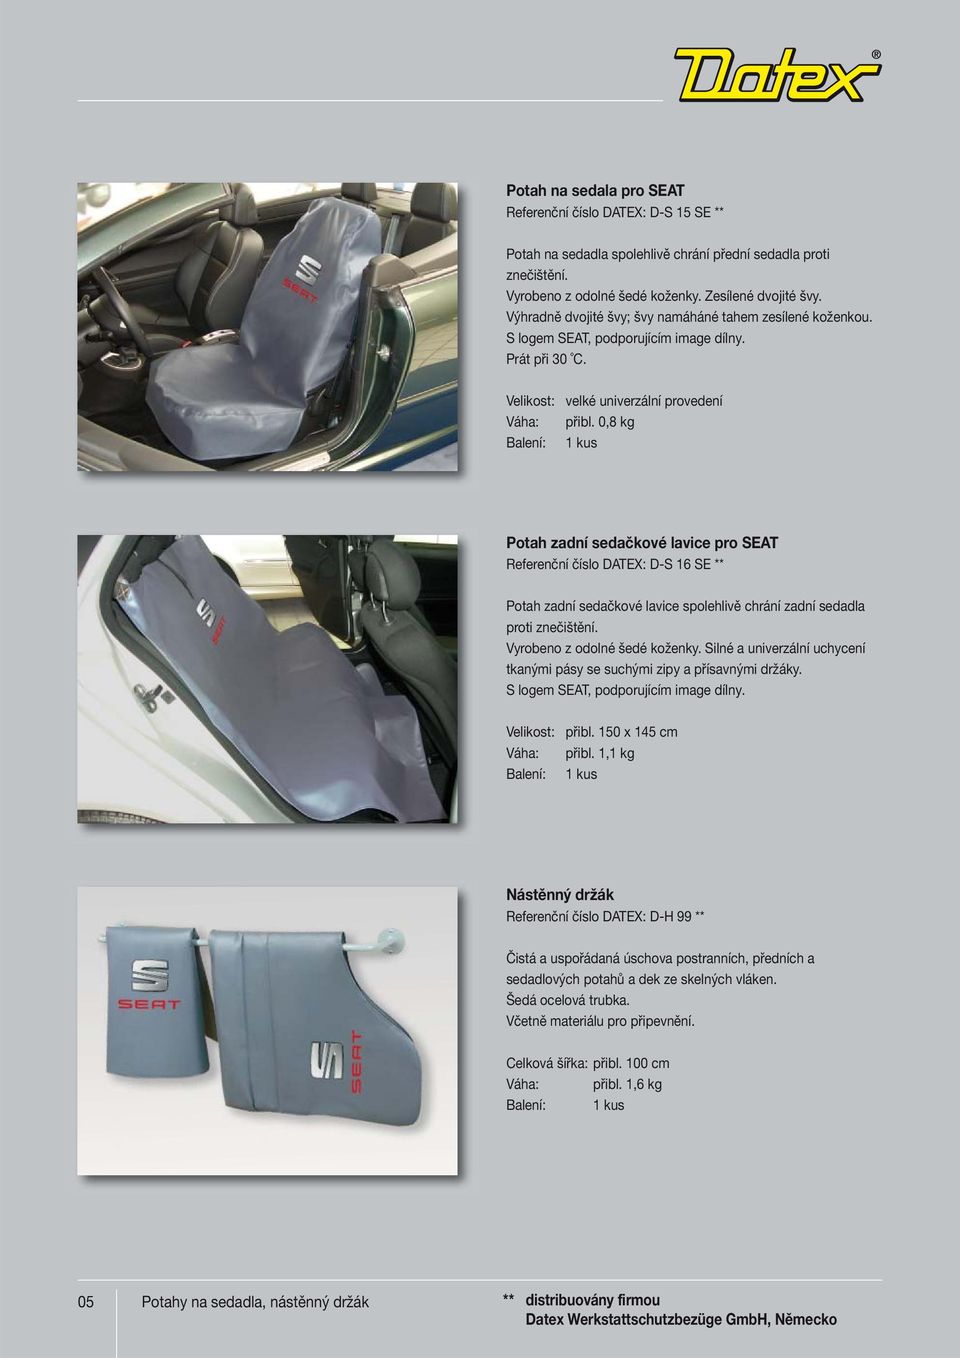 0,8 kg Potah zadní sedačkové lavice pro SEAT Referenční číslo DATEX: D-S 16 SE ** Potah zadní sedačkové lavice spolehlivě chrání zadní sedadla proti znečištění. Vyrobeno z odolné šedé koženky.